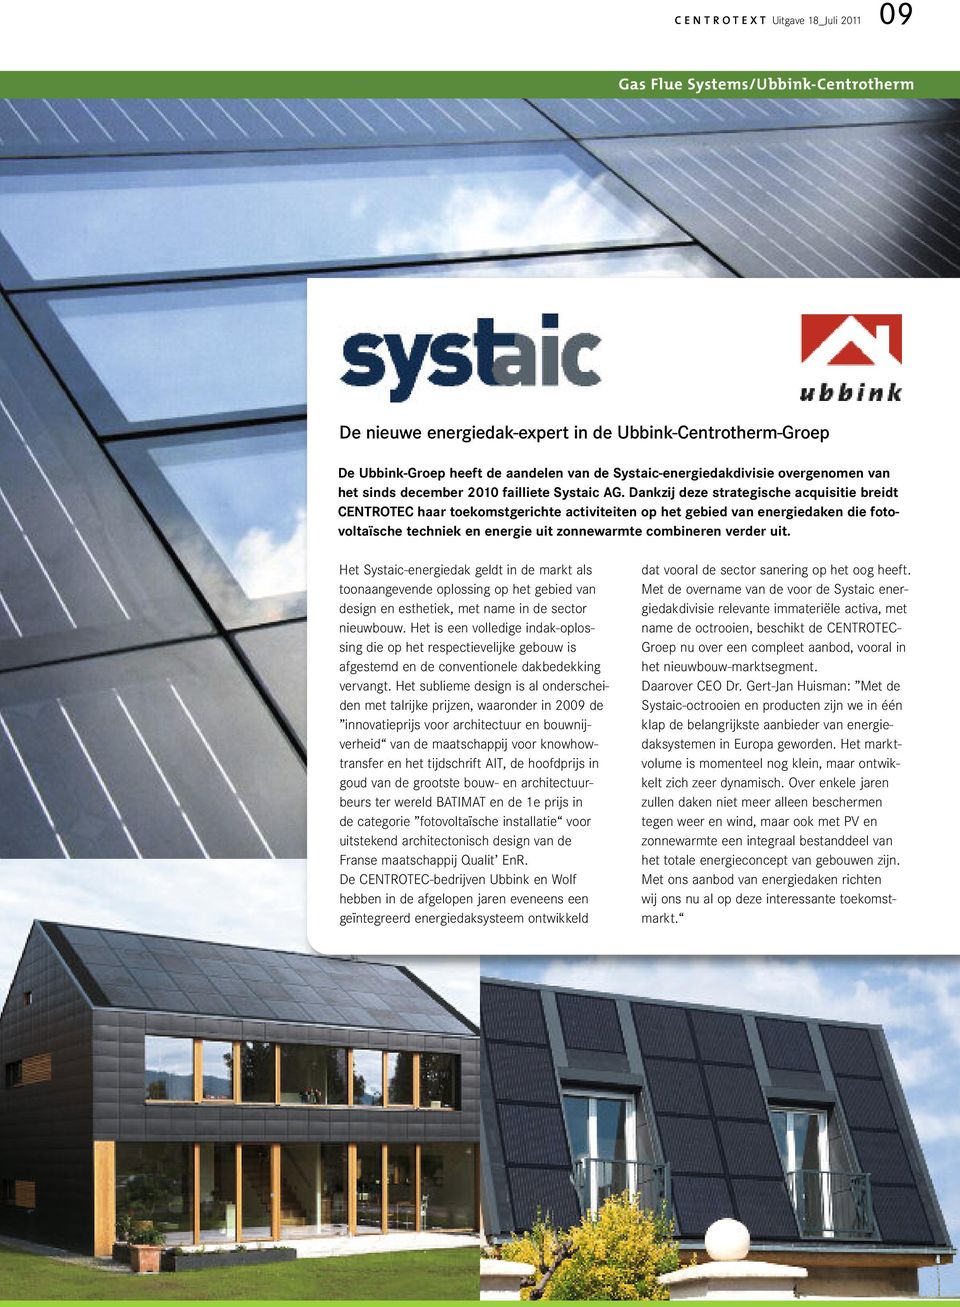 Dankzij deze strategische acquisitie breidt CENTROTEC haar toekomstgerichte activiteiten op het gebied van energiedaken die fotovoltaïsche techniek en energie uit zonnewarmte combineren verder uit.